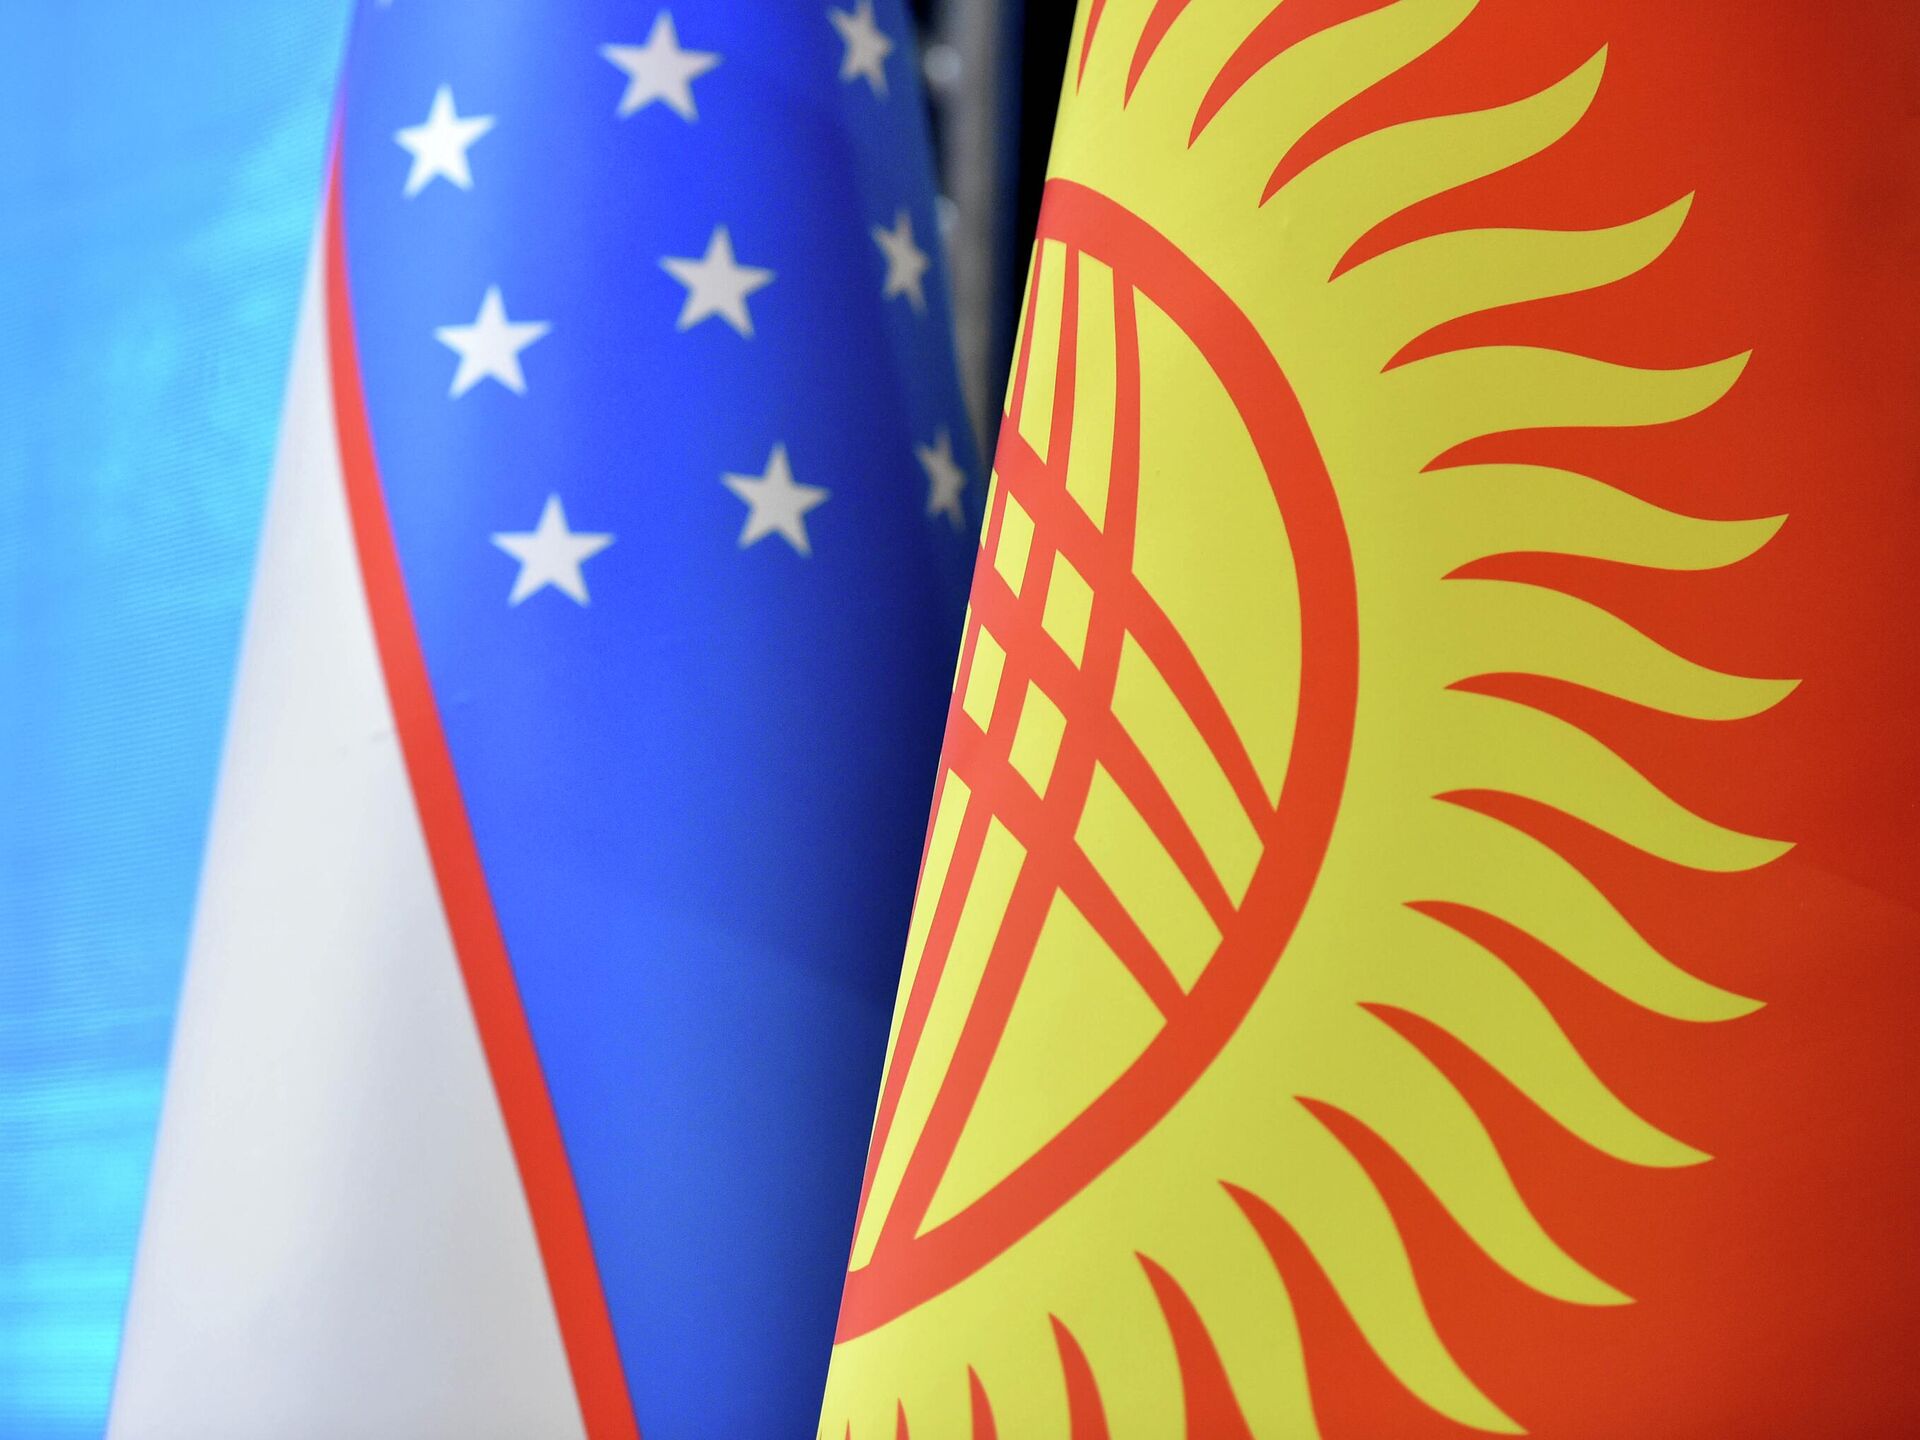 Узбекистан кыргызстан россия. Qirg'iziston. Флаг Киргизии. Кыргызстан Узбекистан. Флаг Киргизии и Узбекистана.